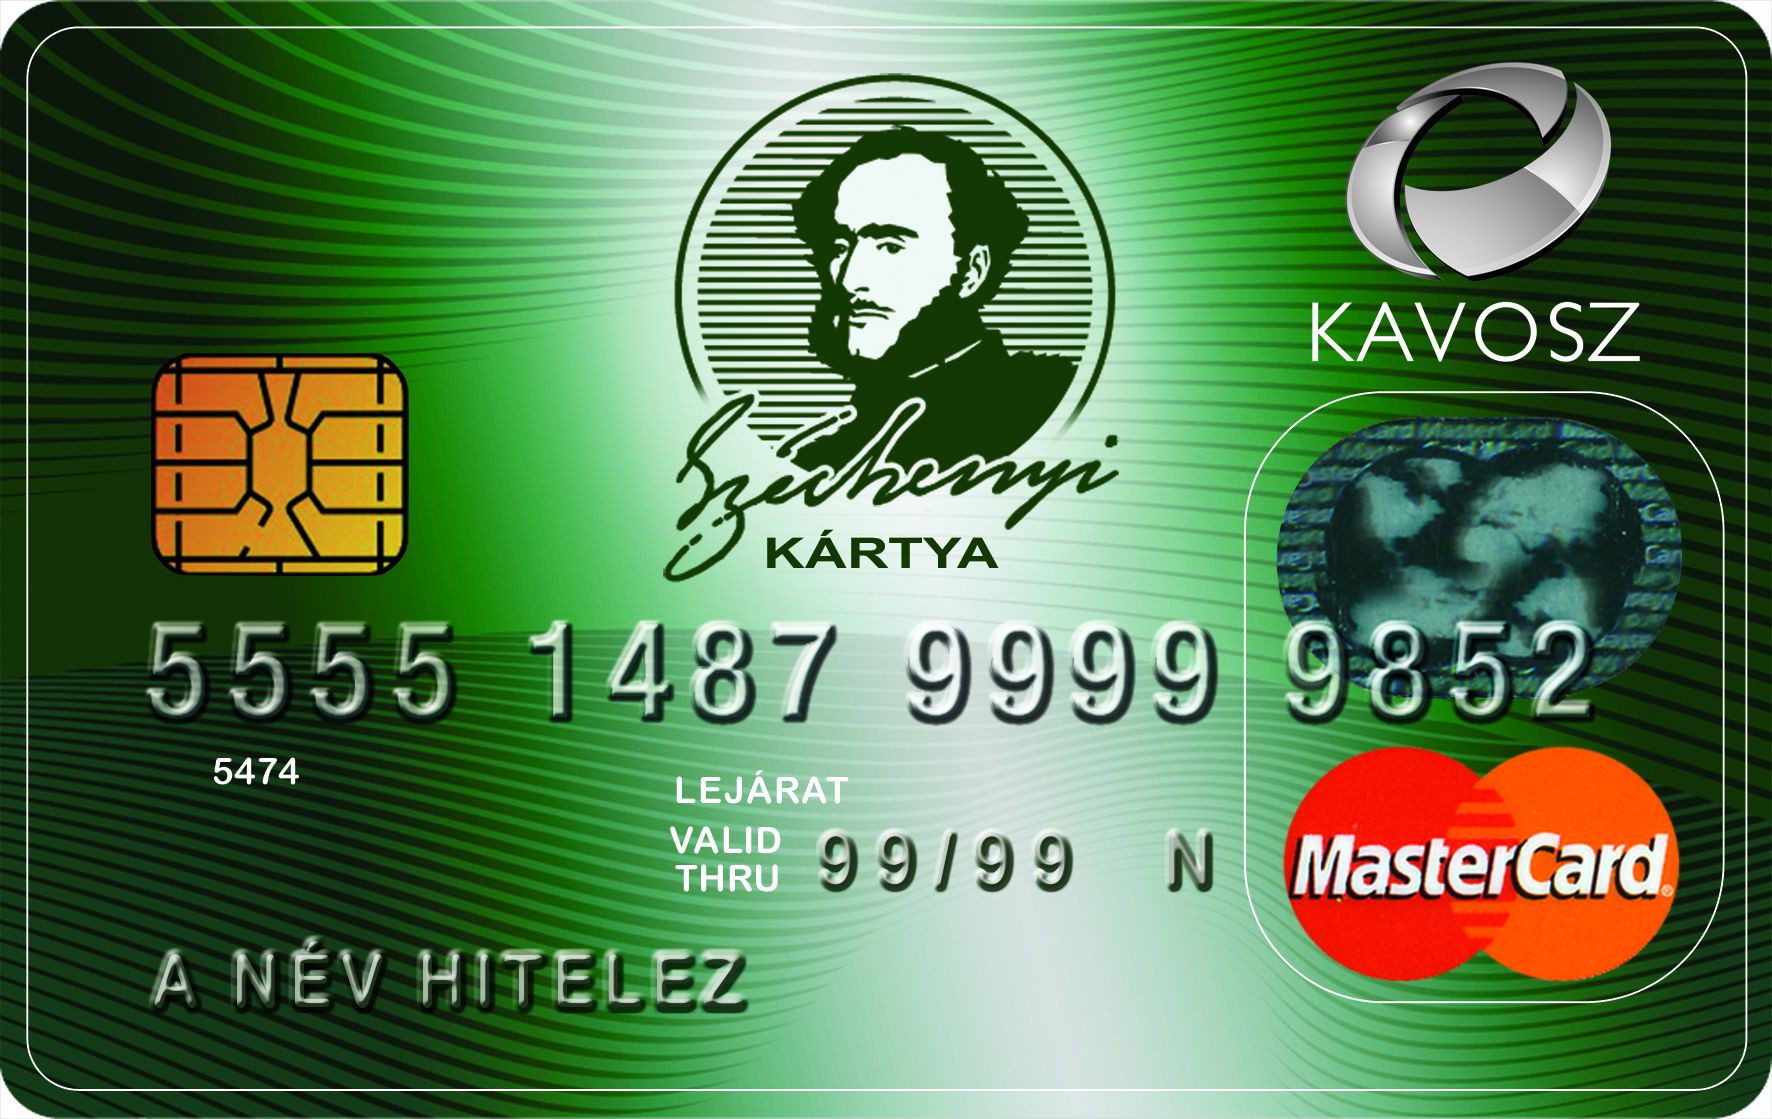 Kavosz: a Széchenyi Kártyával felvehető hitel összegét 50 millió forintra emelték